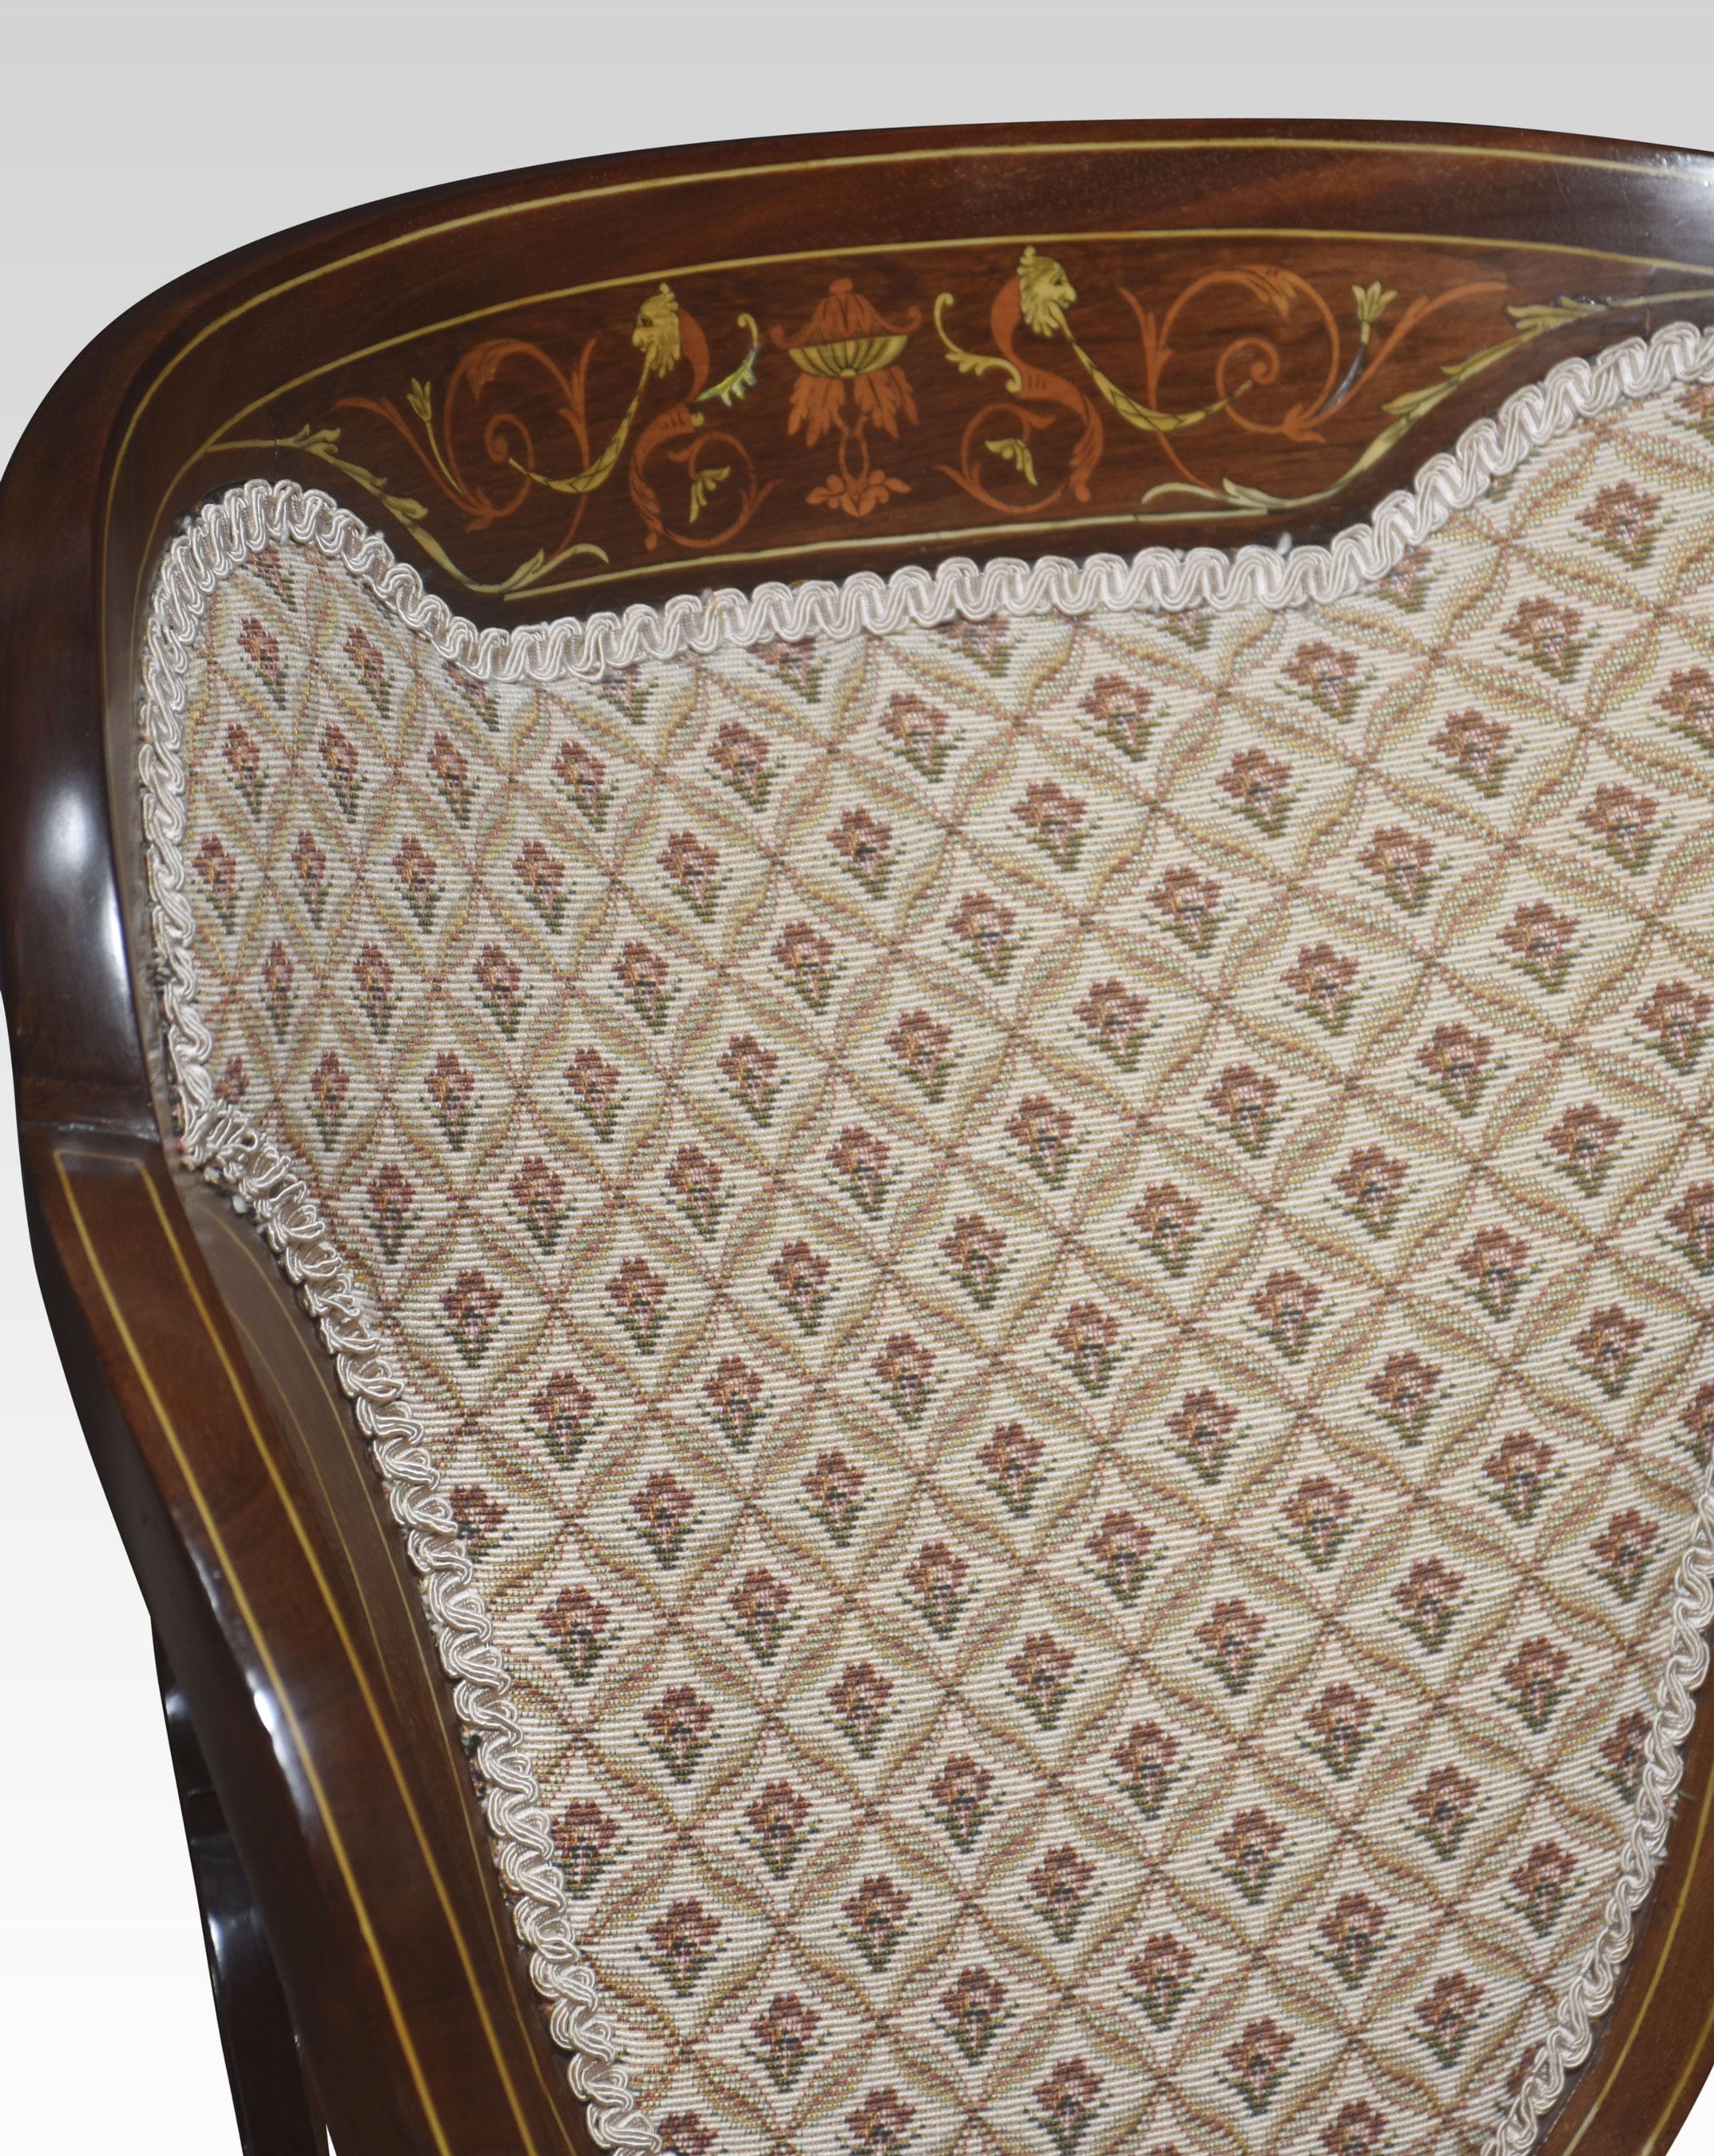 Paar Sessel aus Mahagoni mit Intarsien. Geformte Rückenlehne mit feiner Intarsienarbeit über der zentralen gepolsterten Rückenlehne, flankiert von durchbrochenen Laubsägearbeiten, mit offenen Armlehnen und einem gepolsterten Sitz. Gestützt auf